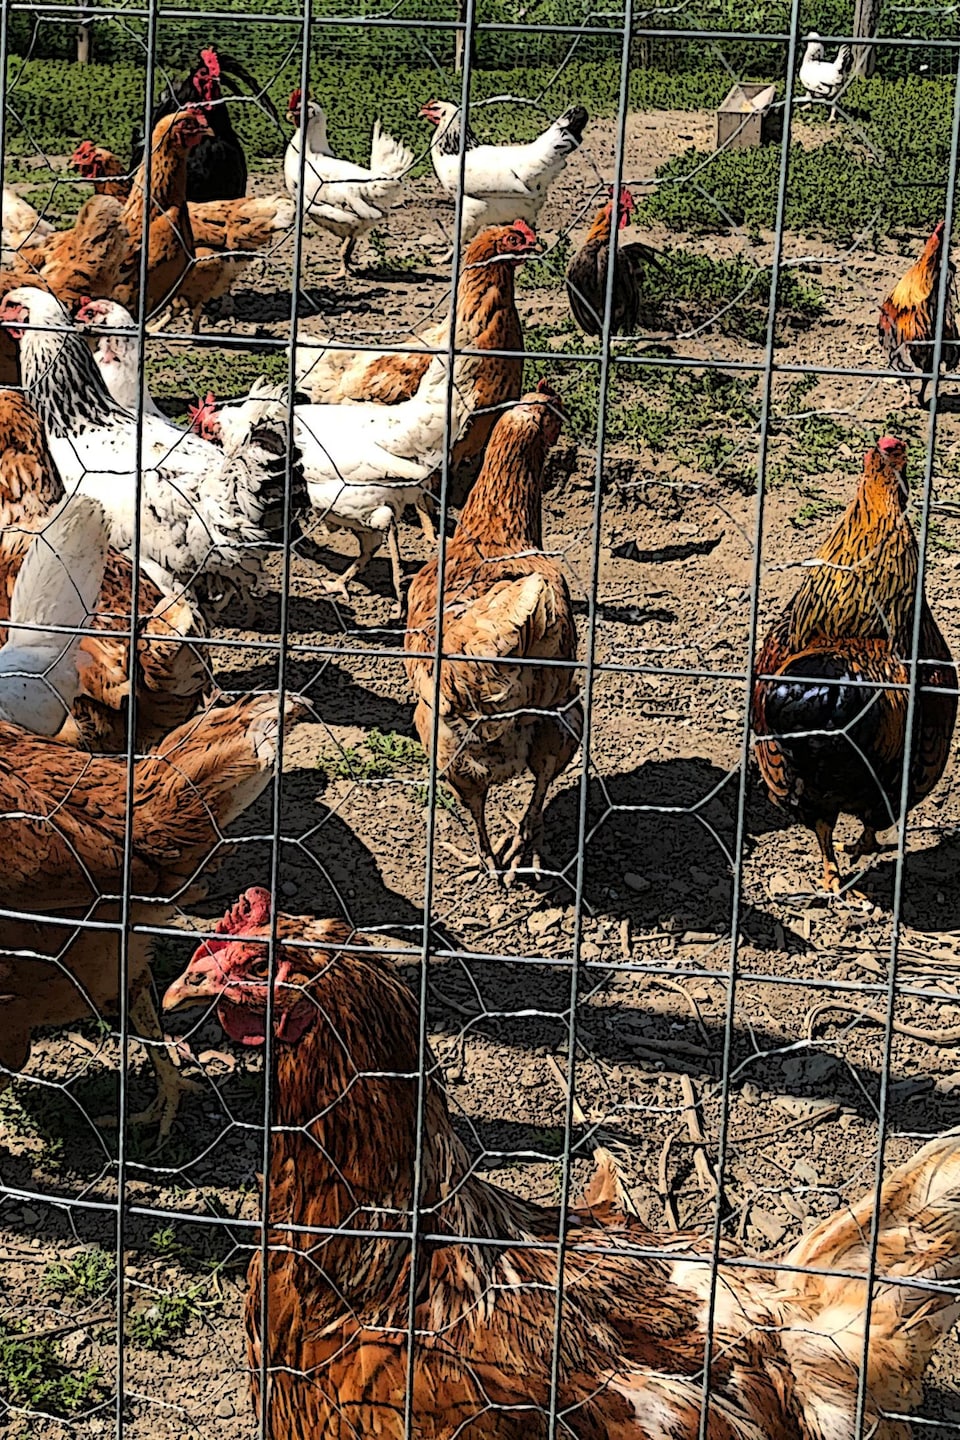 Des poules en liberté dans un enclos.